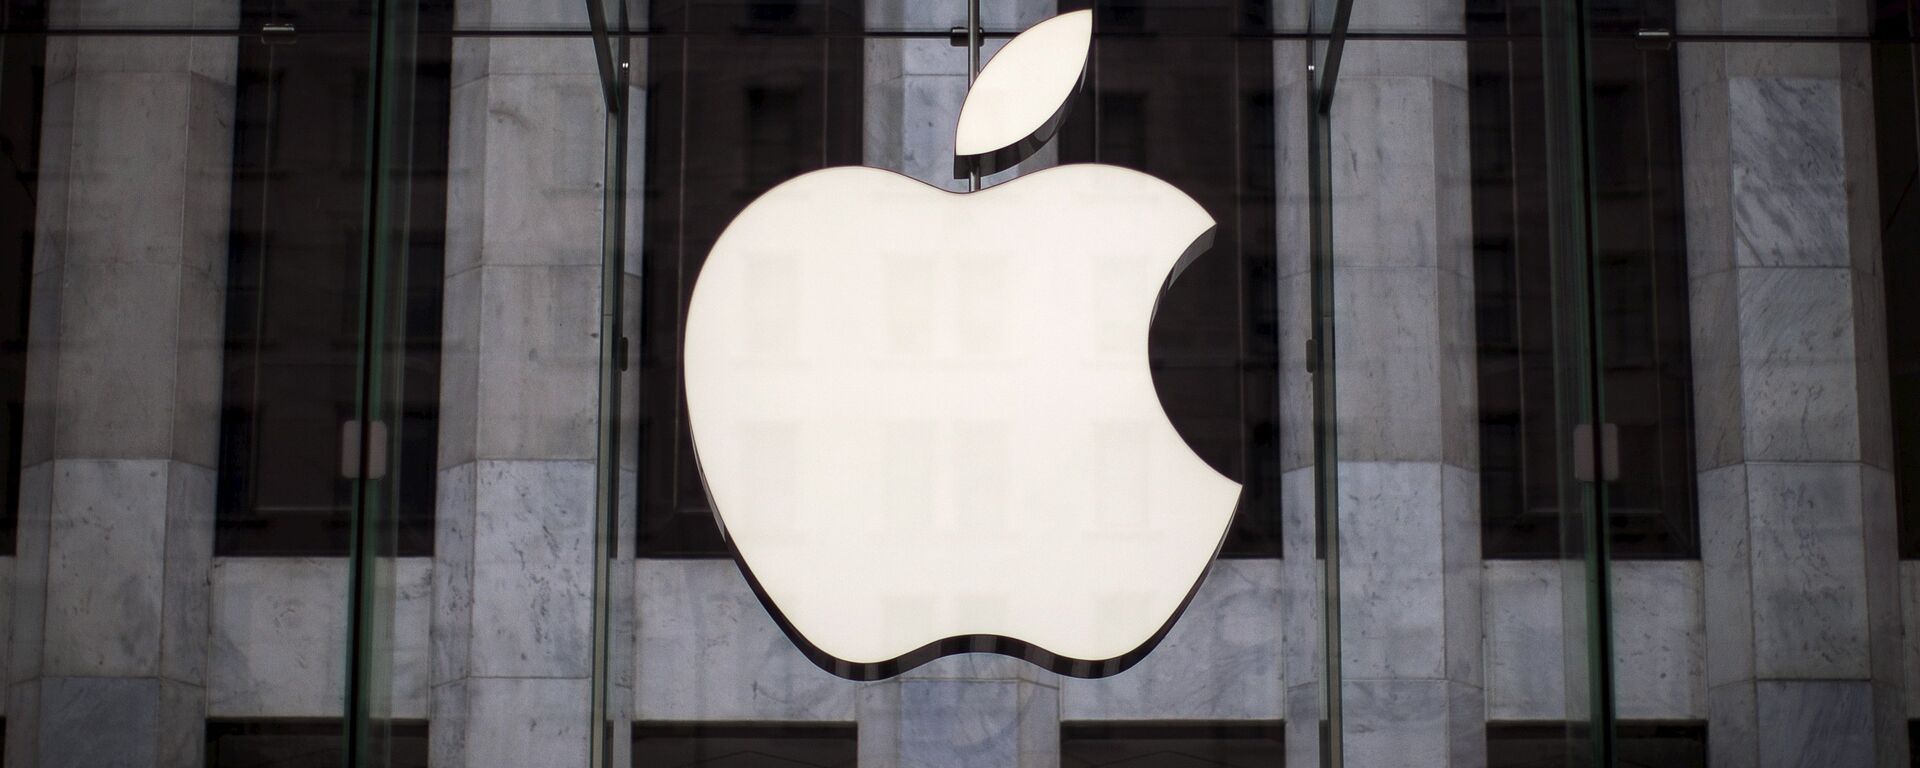 Логотип компании Apple над входом в магазинн 5-й Авеню в Нью-Йорке - Sputnik Узбекистан, 1920, 04.01.2021